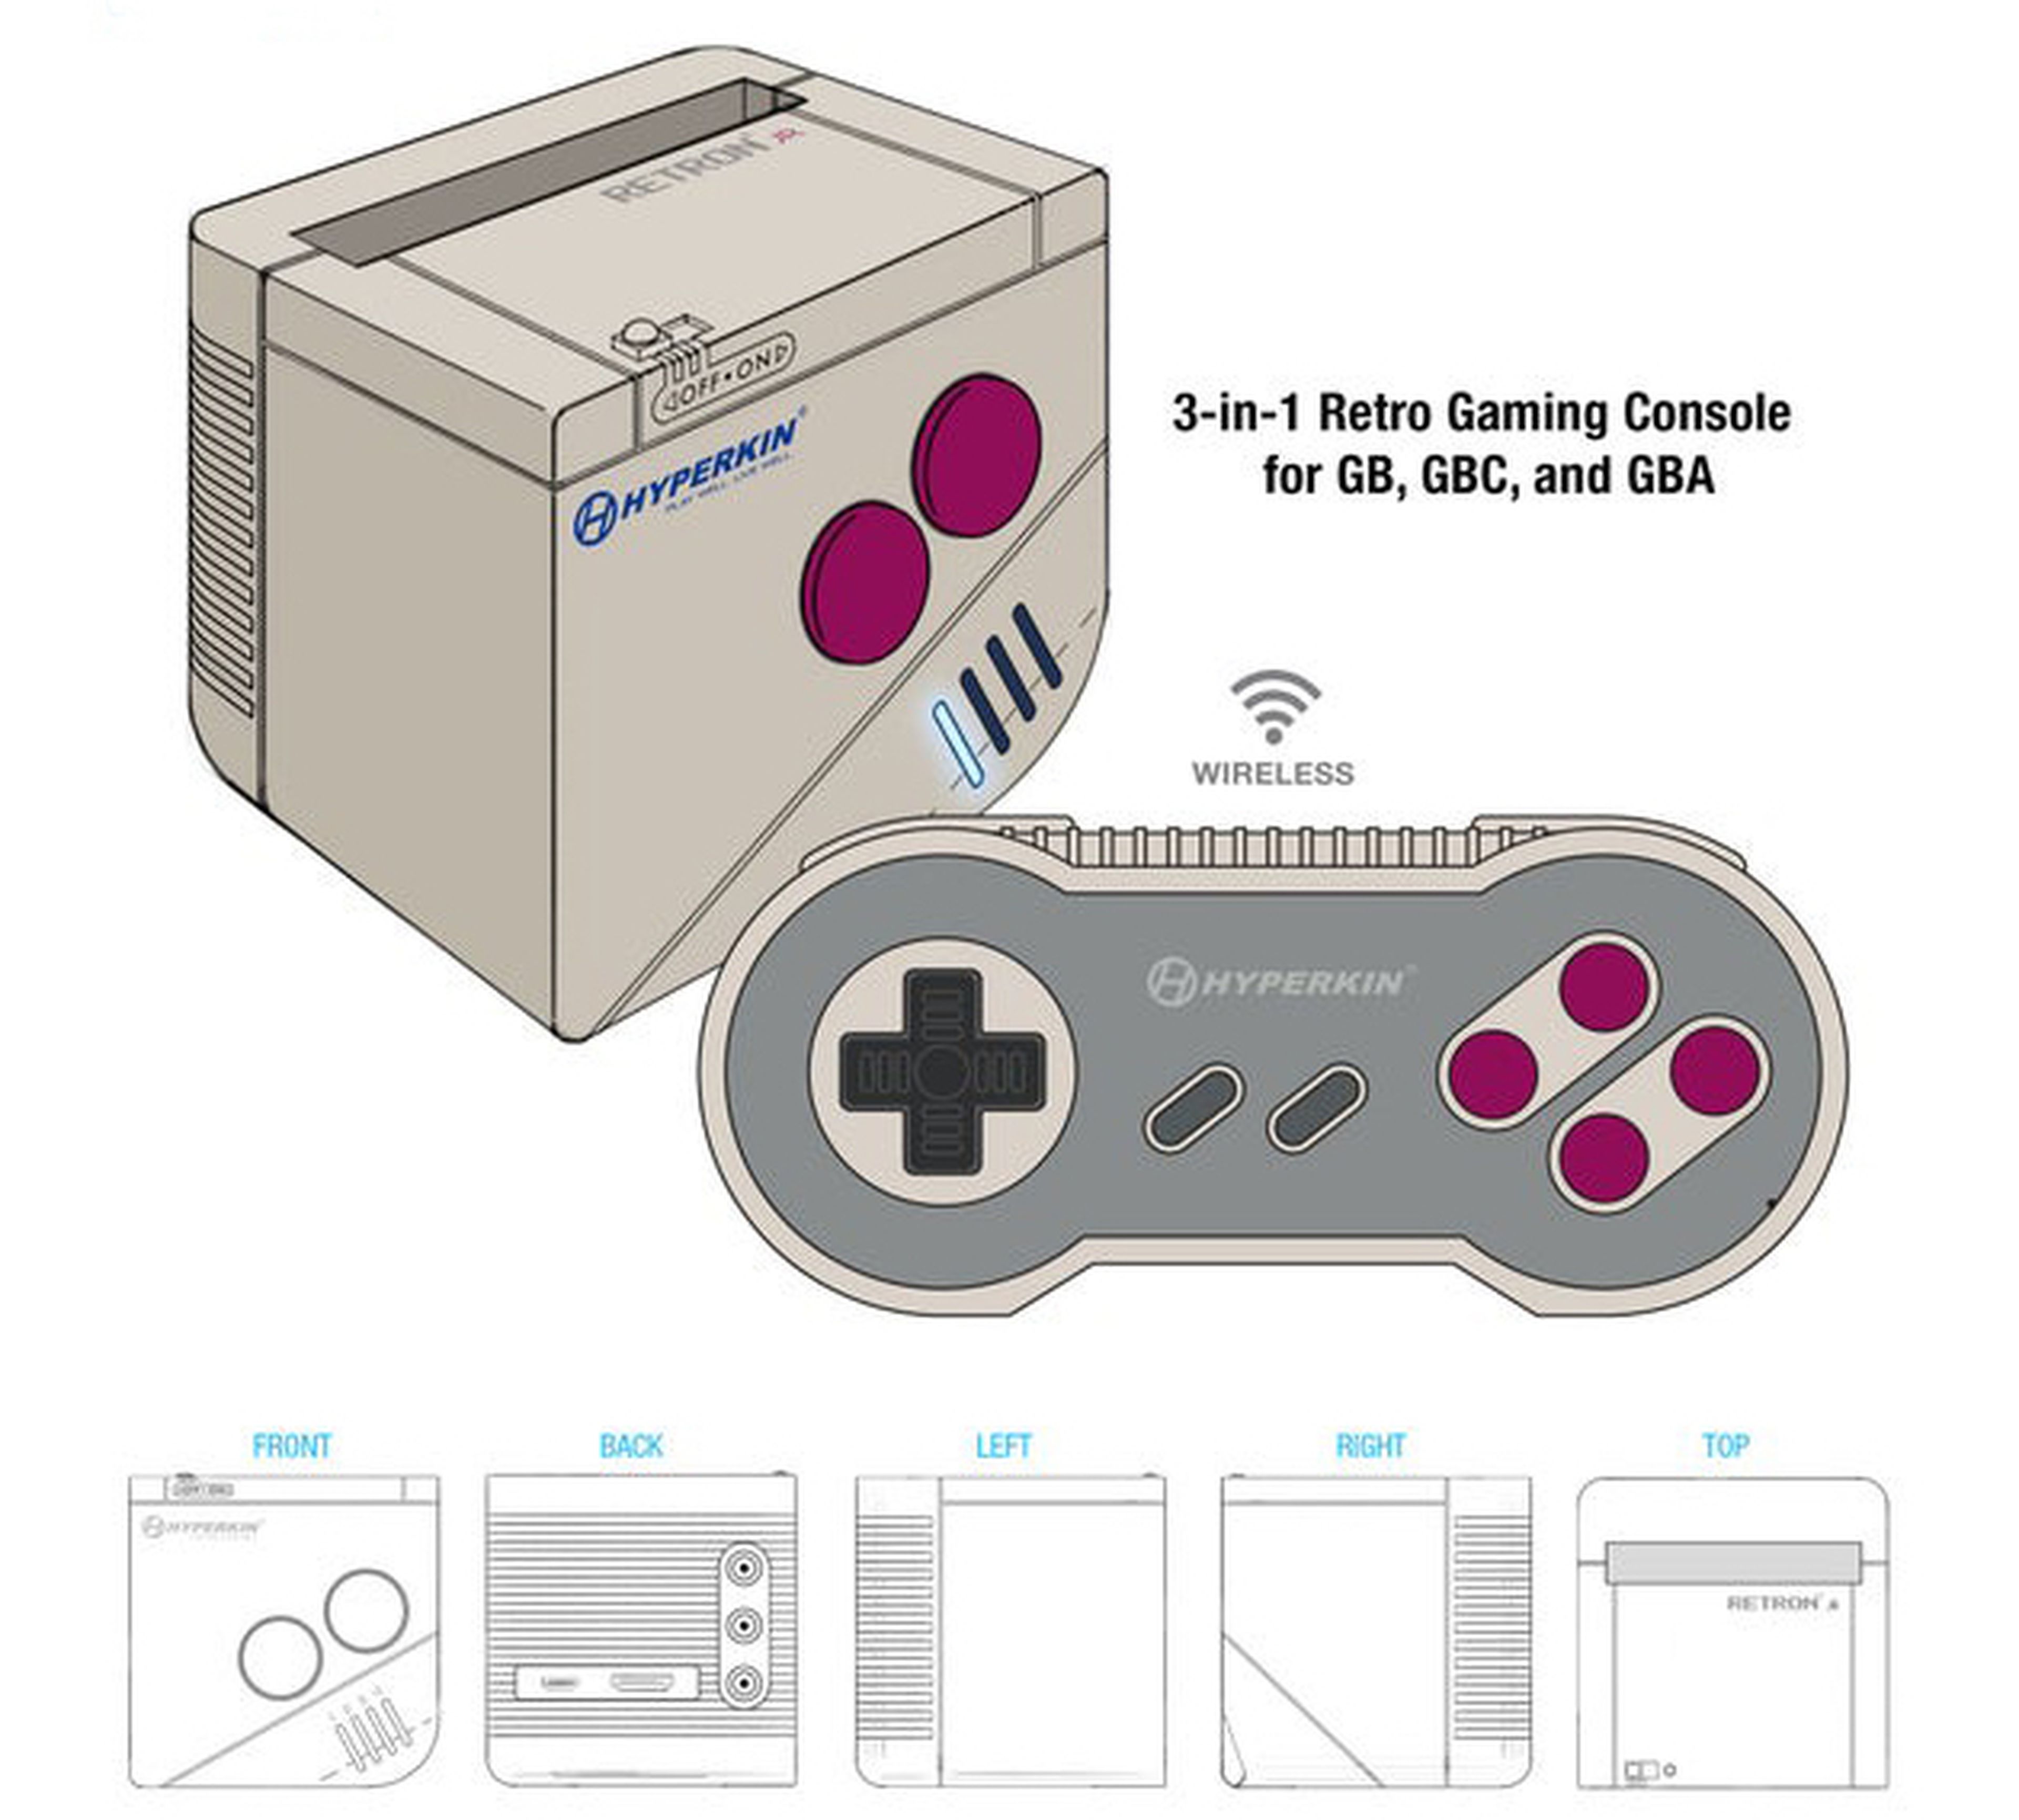 La Game Boy de Nintendo arrive sur votre TV avec la RetroN Jr.